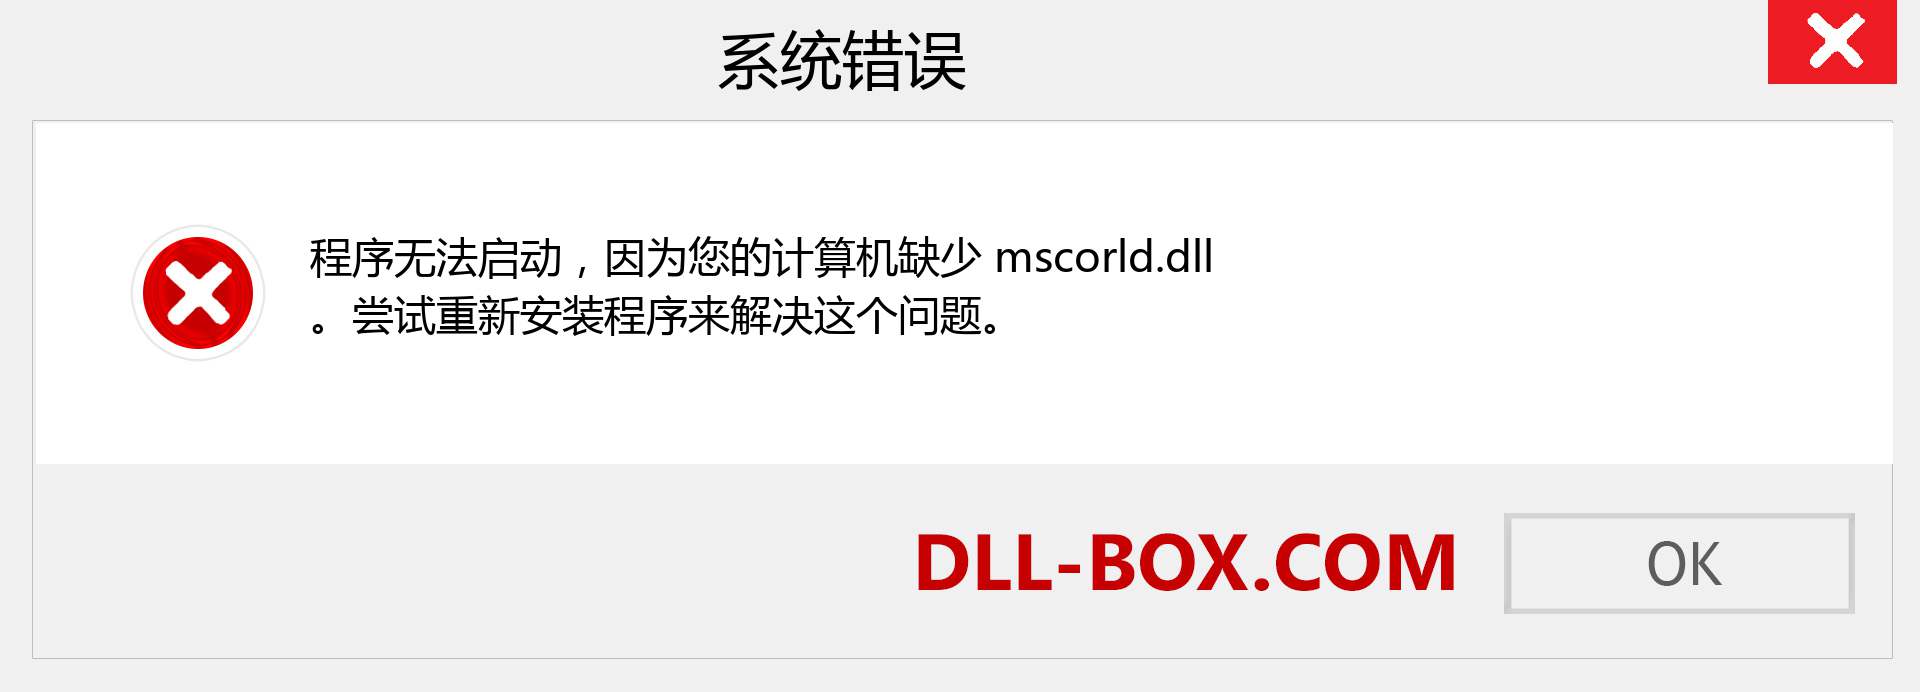 mscorld.dll 文件丢失？。 适用于 Windows 7、8、10 的下载 - 修复 Windows、照片、图像上的 mscorld dll 丢失错误